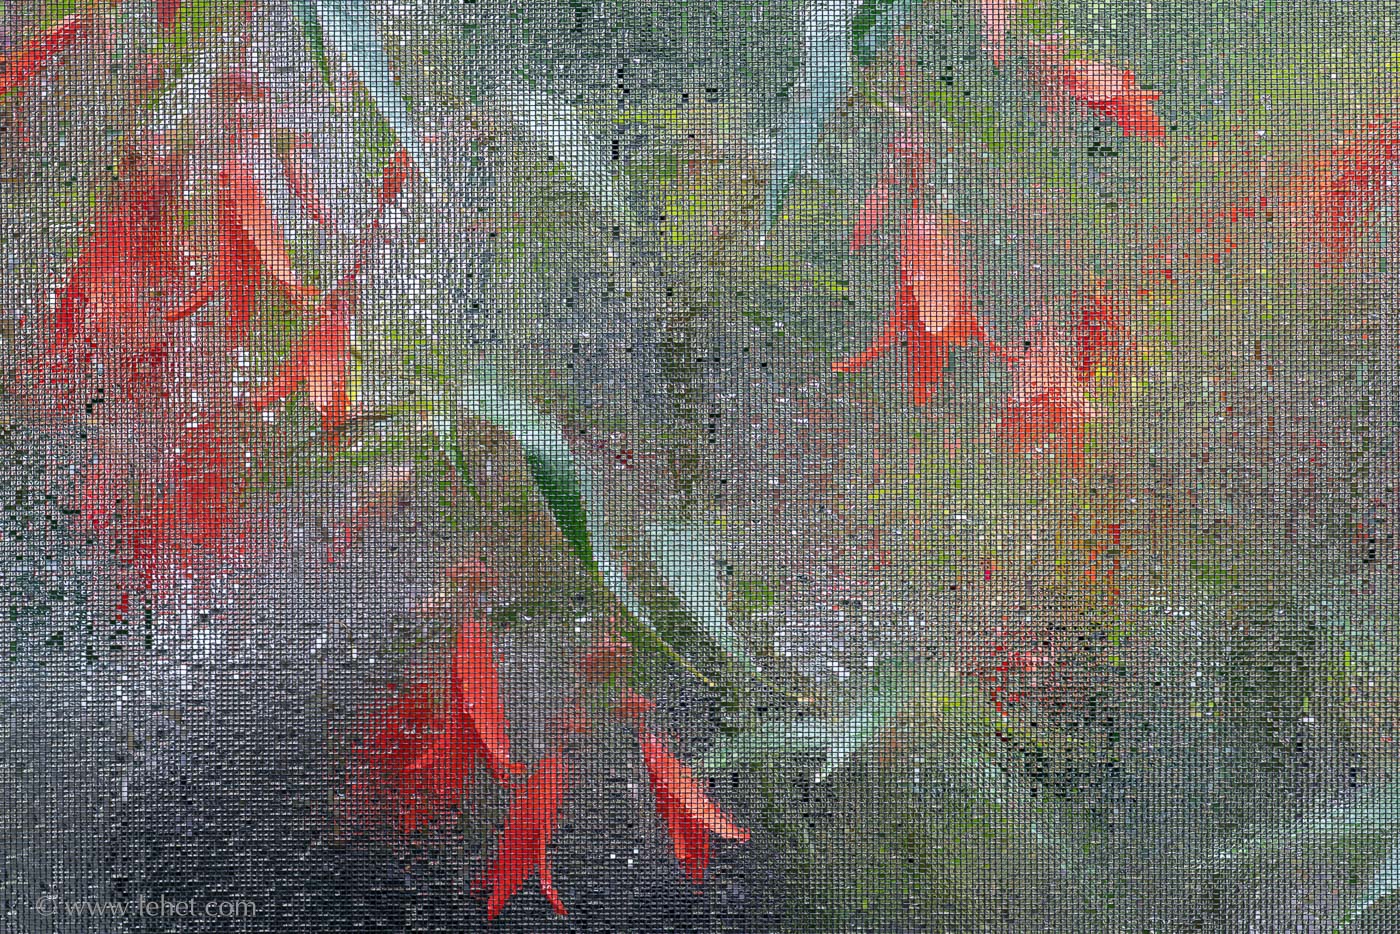 Orange Begonias through screen in rain